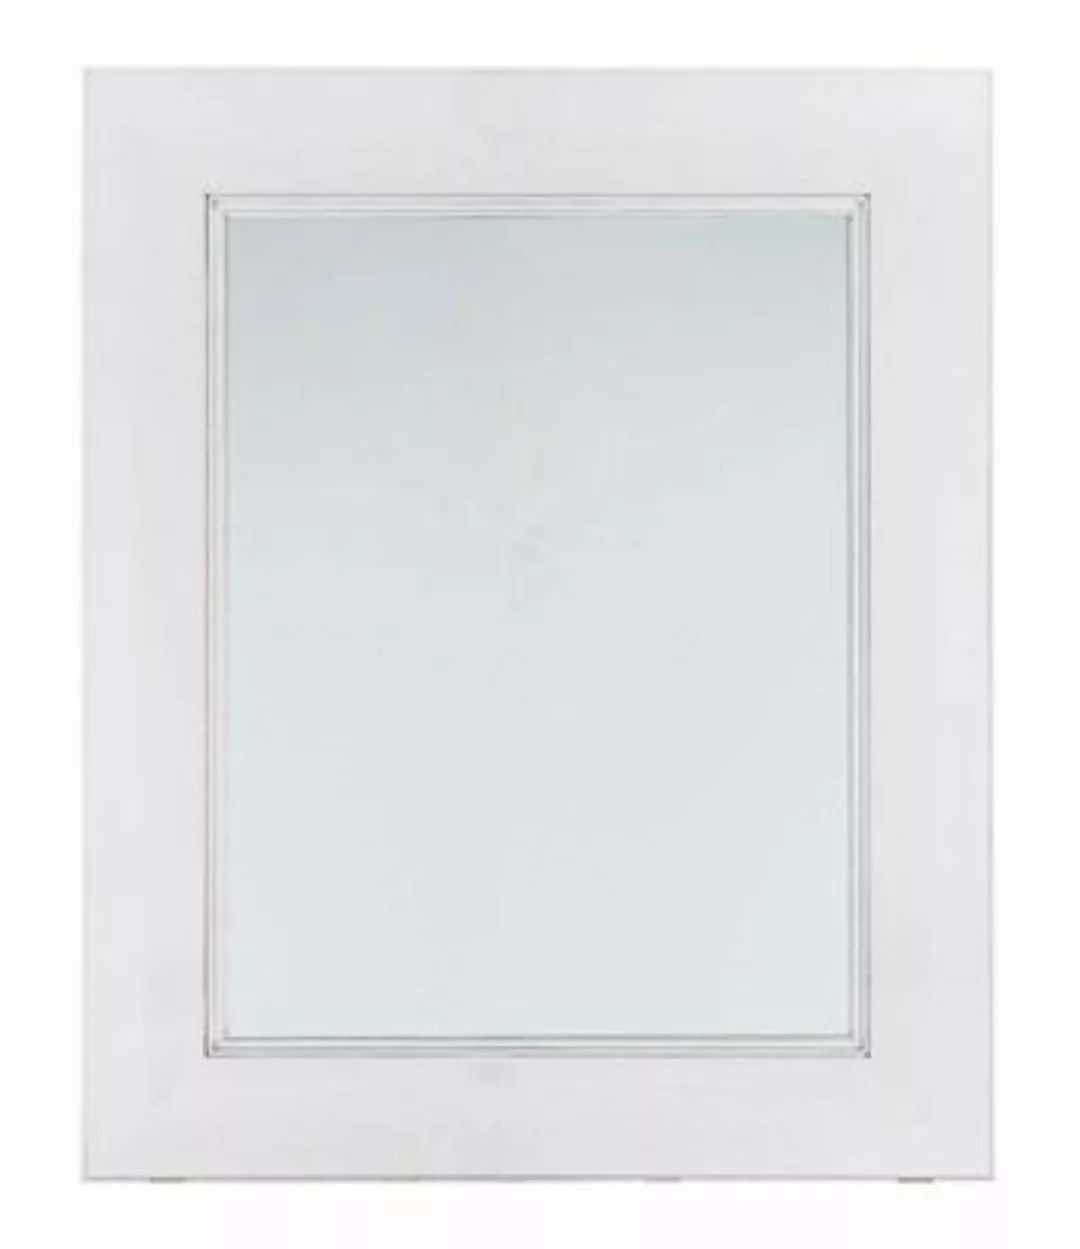 Kartell - Francois Ghost Spiegel - glasklar/transparent/65 x 79 x 5,7cm günstig online kaufen